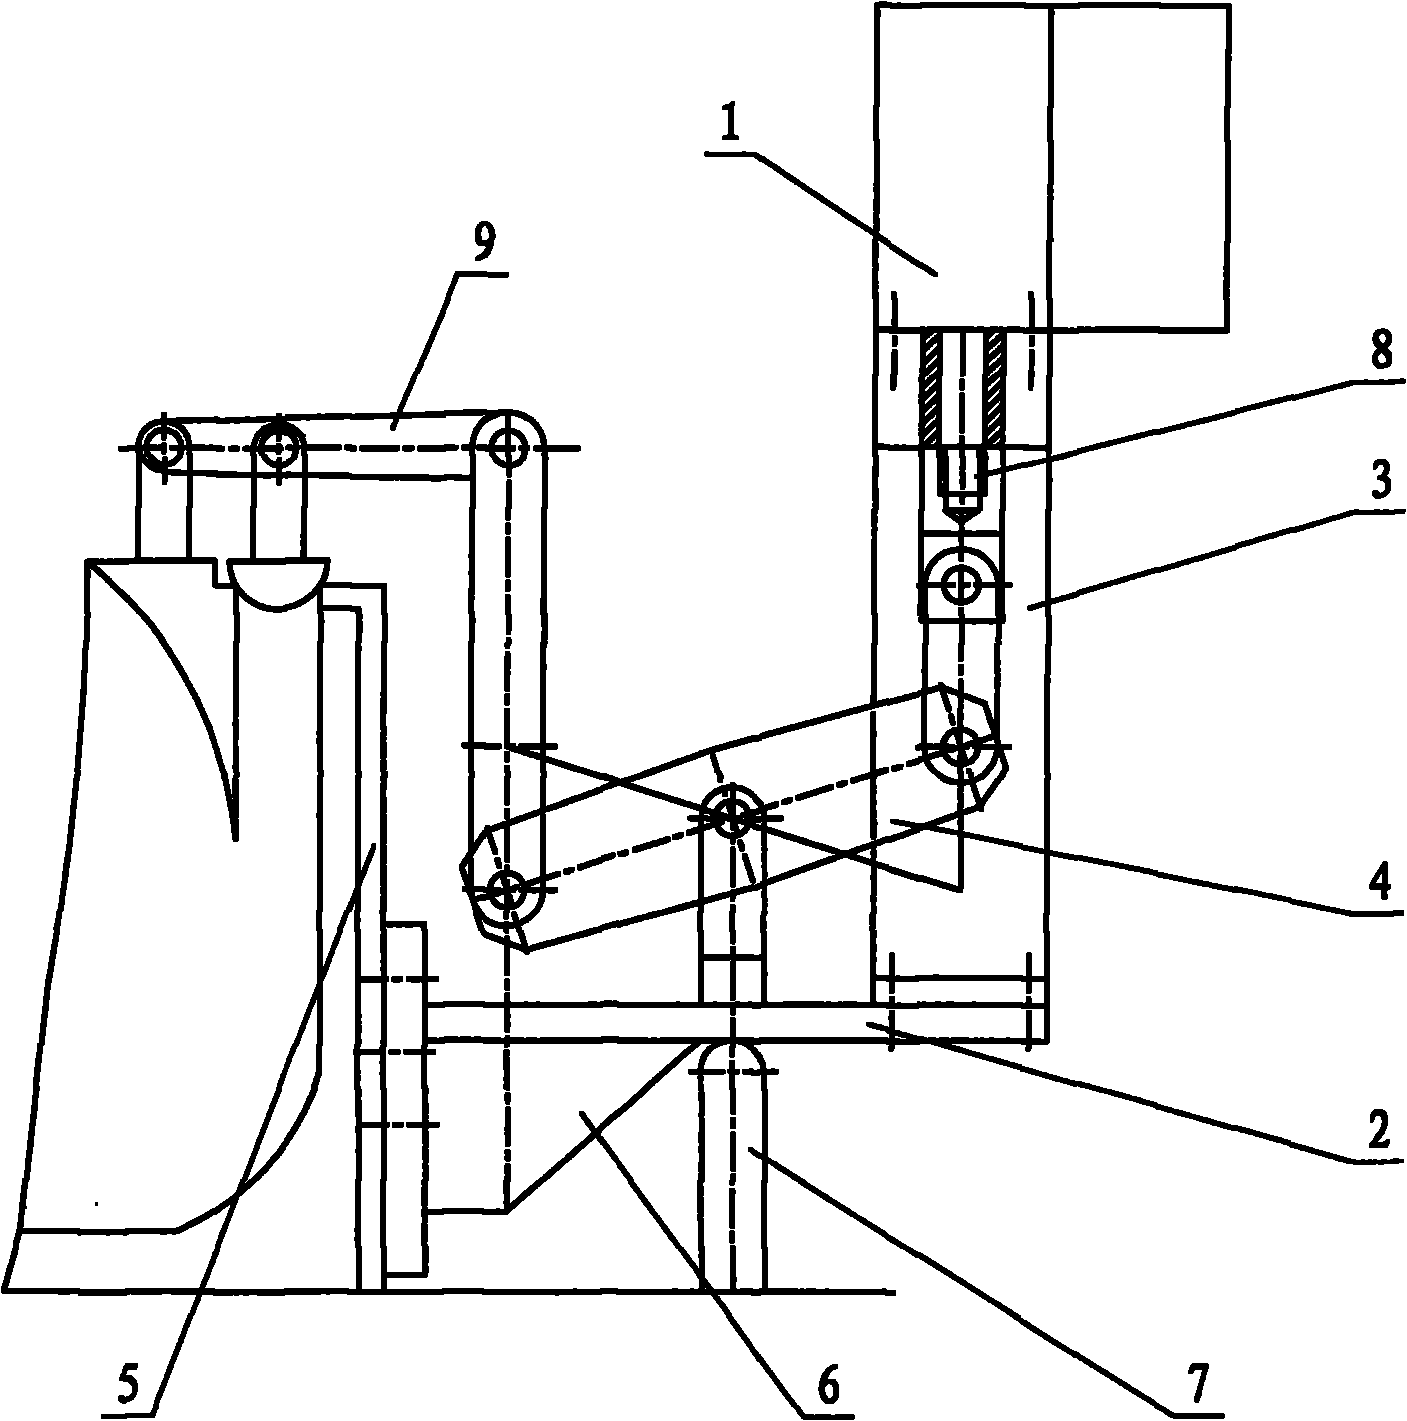 Fixed form of hydraulic servomotor in electro-hydraulic control system